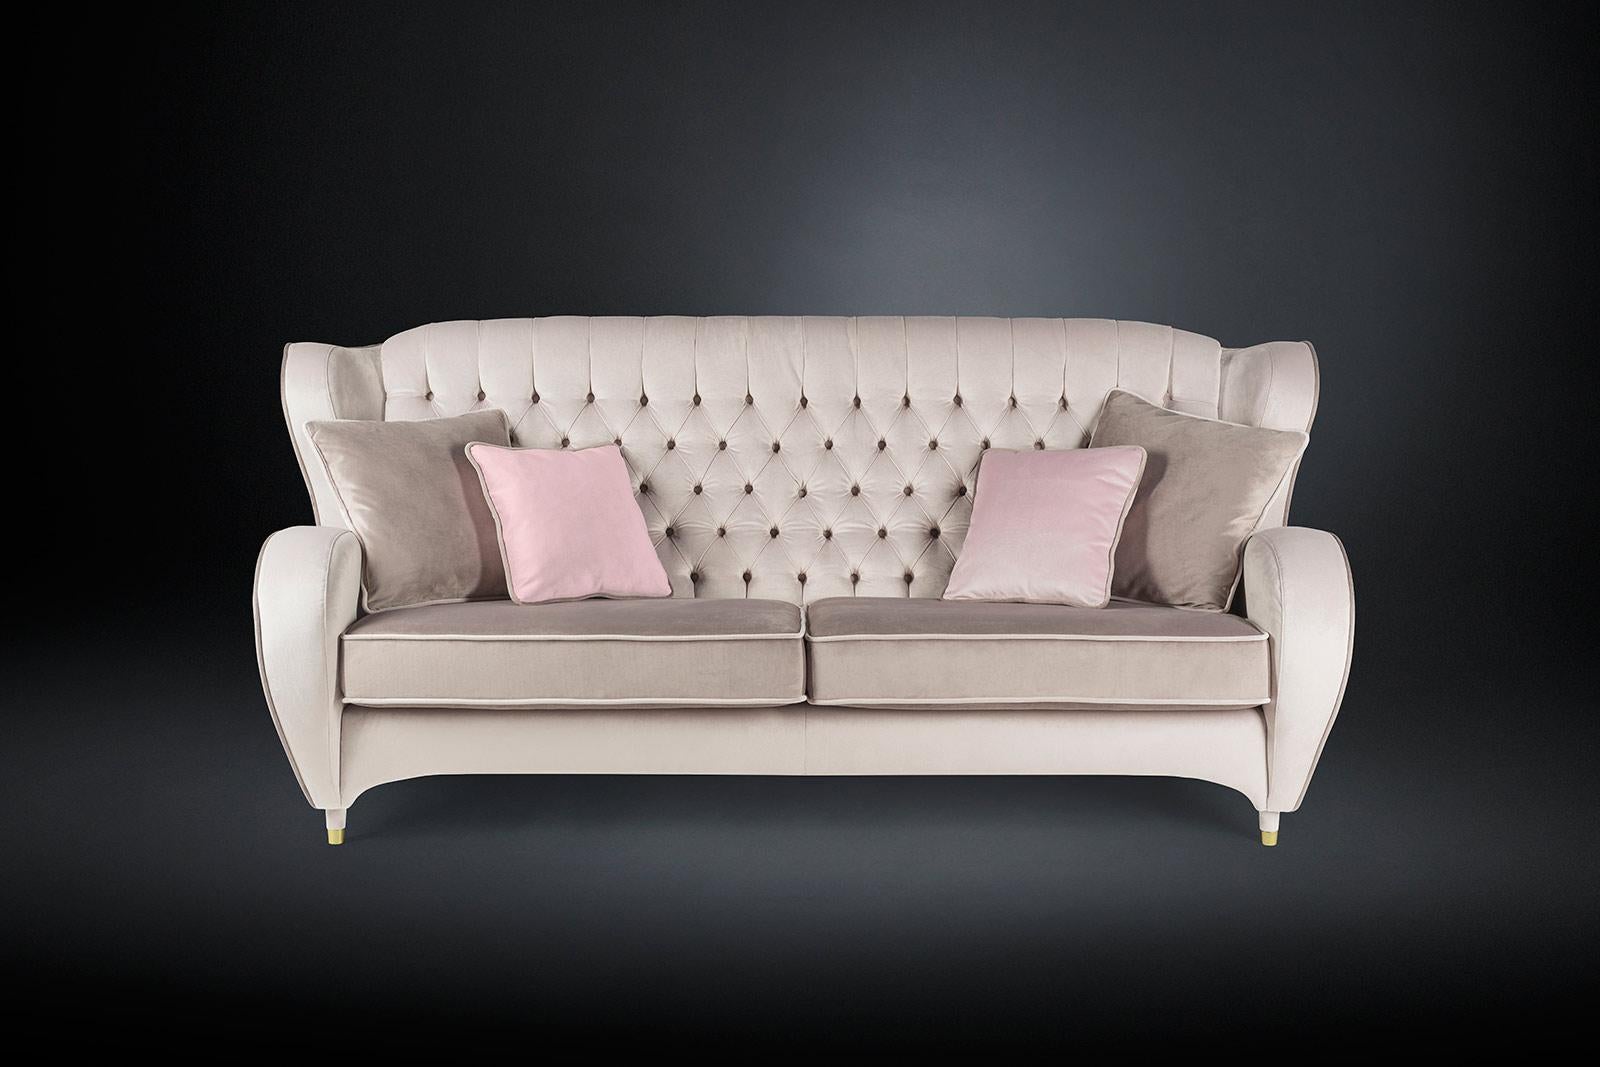 VG-Möbel stehen für Luxus im Sinne von Exklusivität, Auszeichnung und hoher Qualität. Sie sind das Ergebnis von anspruchsvollem und exklusivem Design mit einer starken Identität und sind das Ergebnis einer akribischen Aufmerksamkeit für die